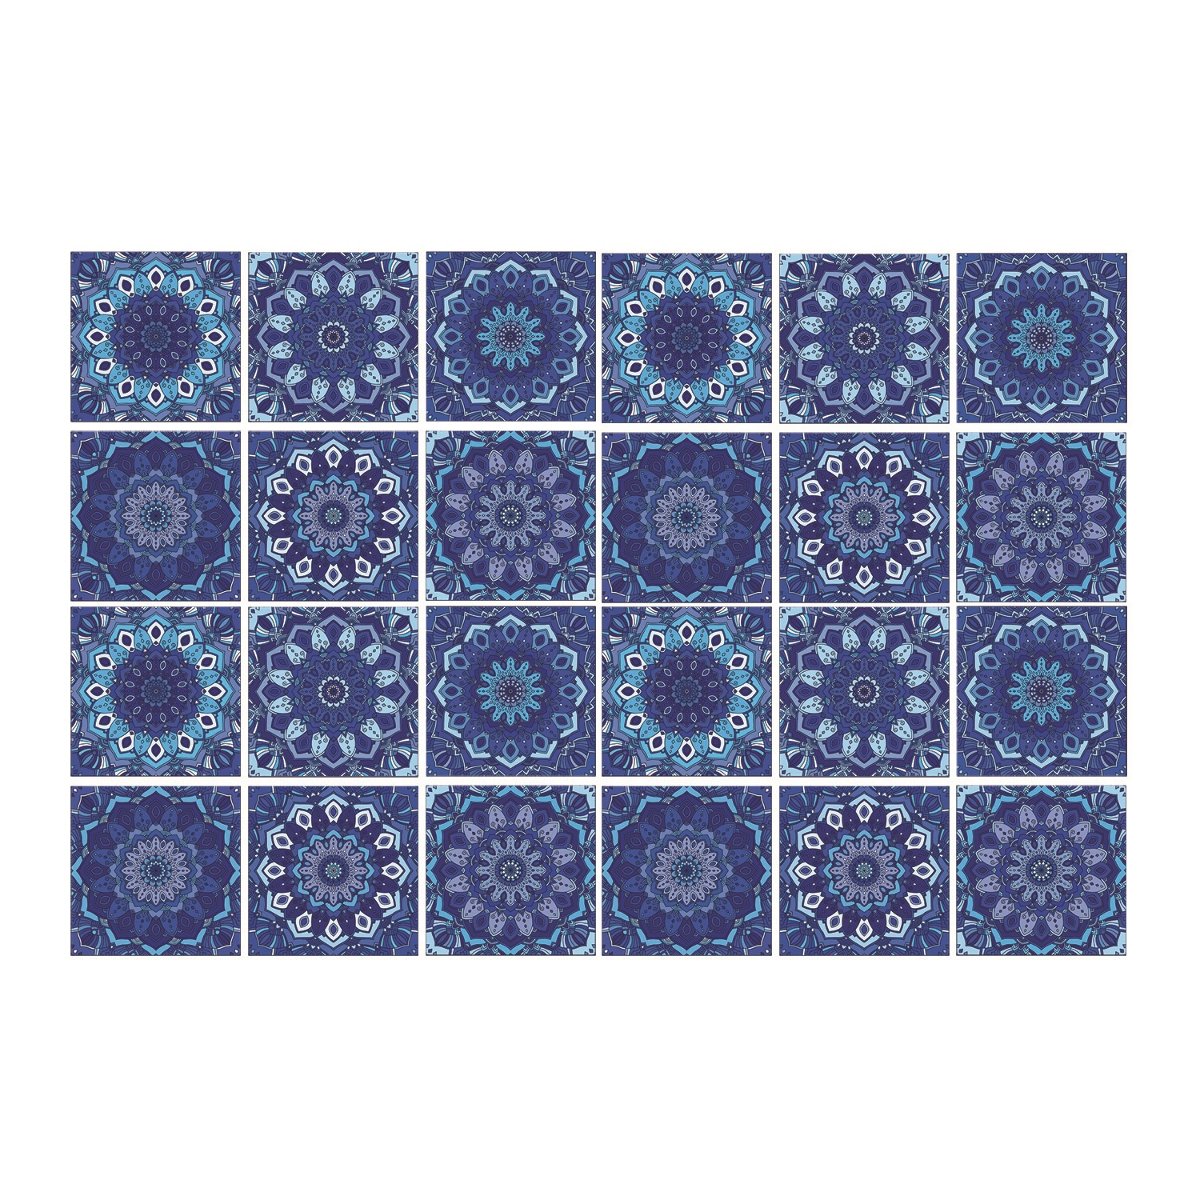 Okleina do kuchni 24szt niebieska mozaika 20x20 cm, Coloray